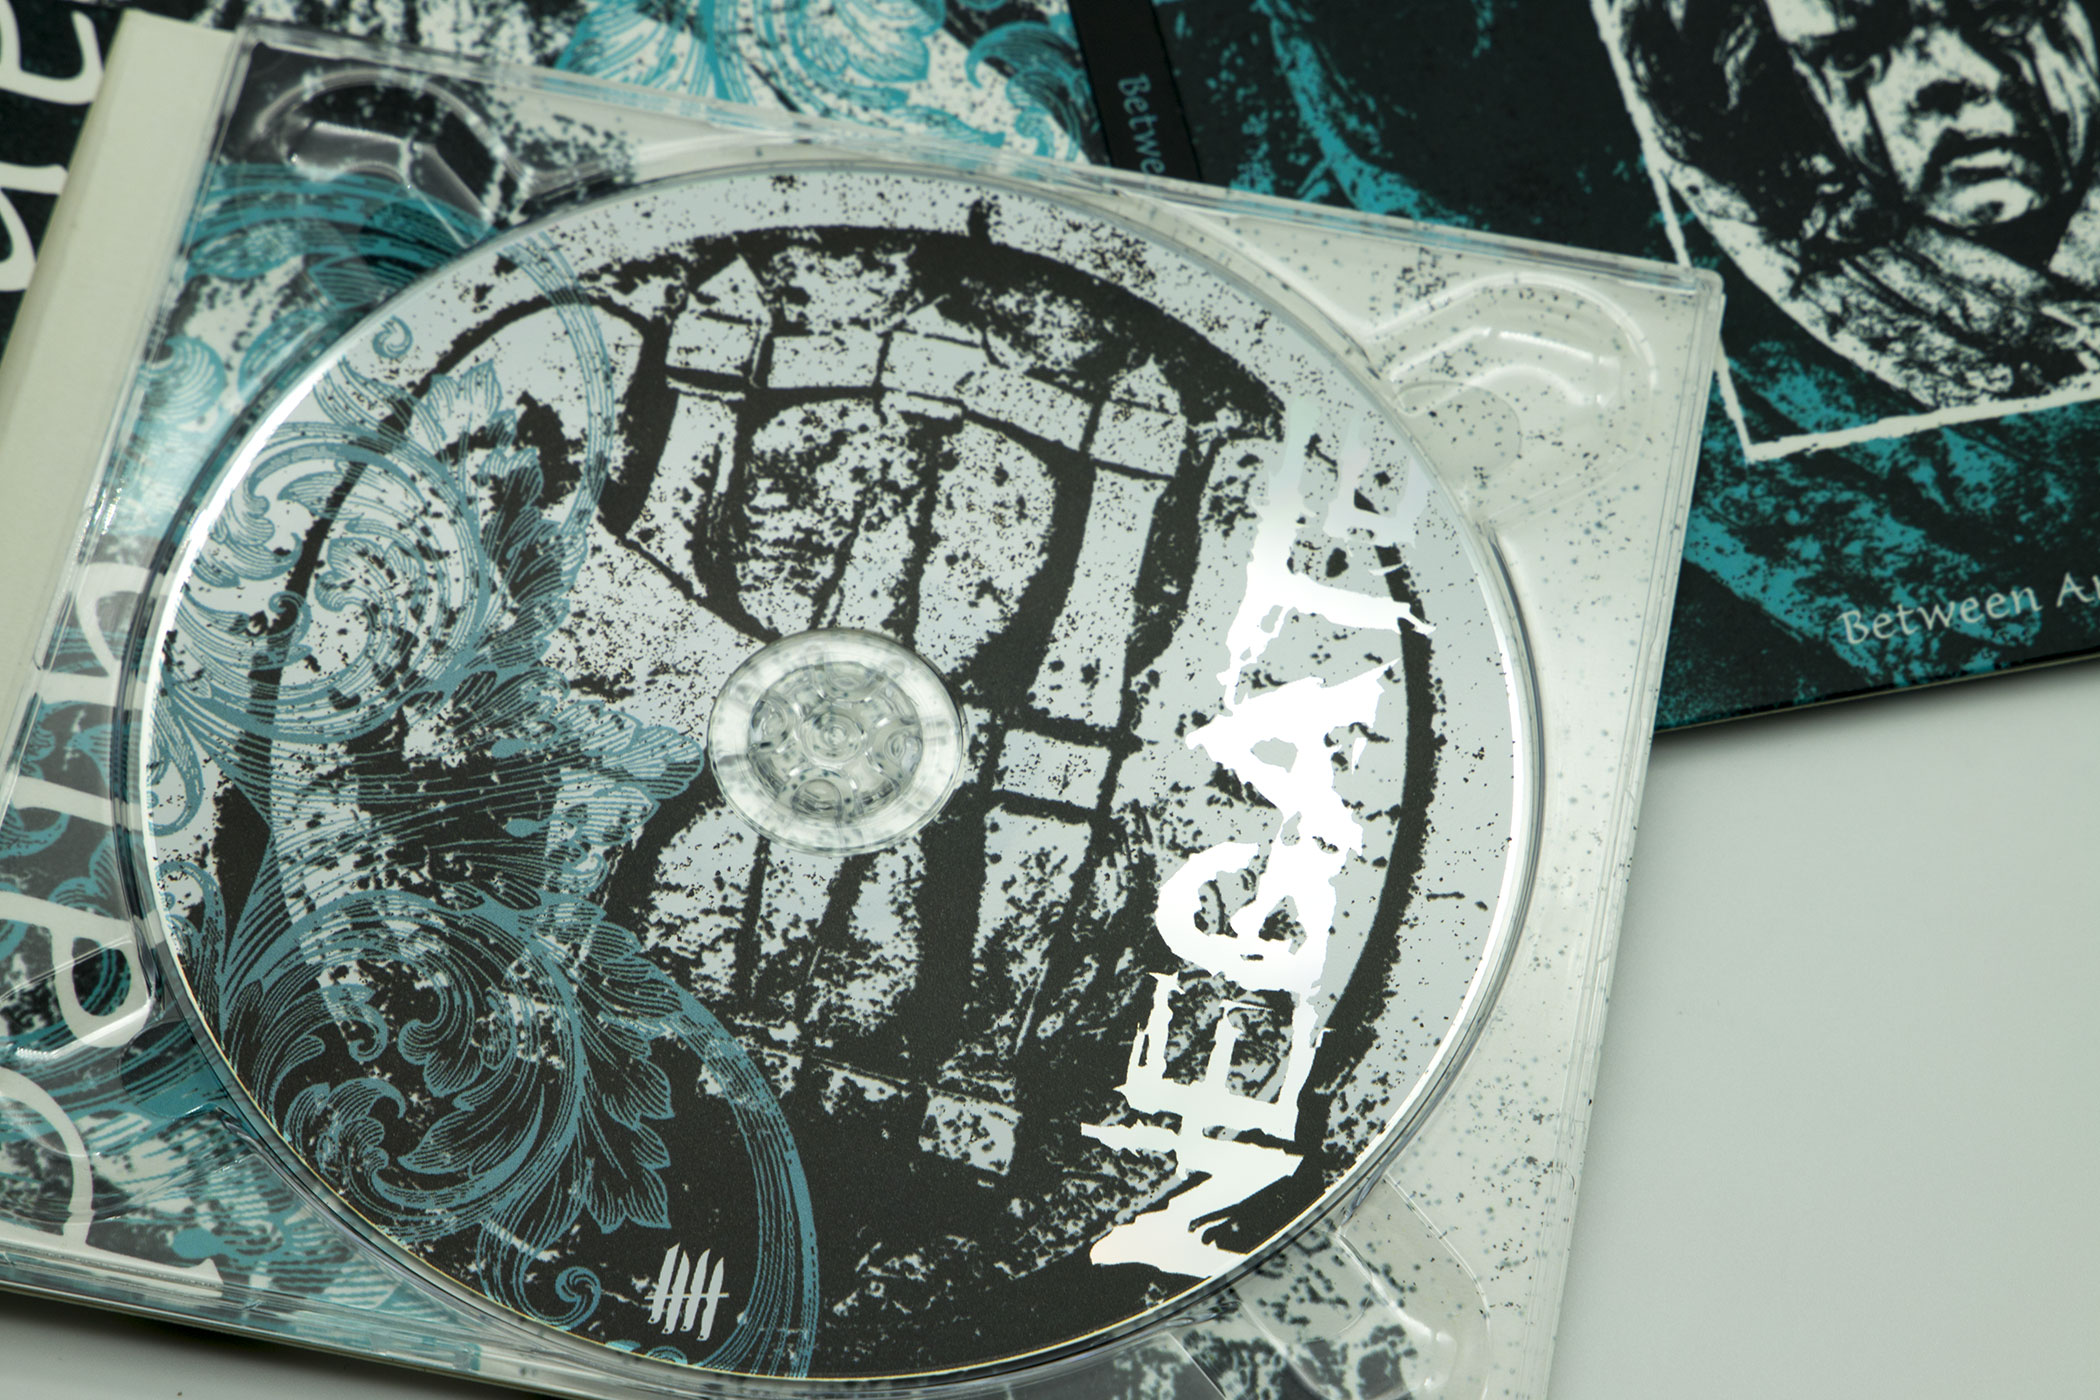 NEGATE "Between Anger and Pain" die-cut Digipack enhanced CD